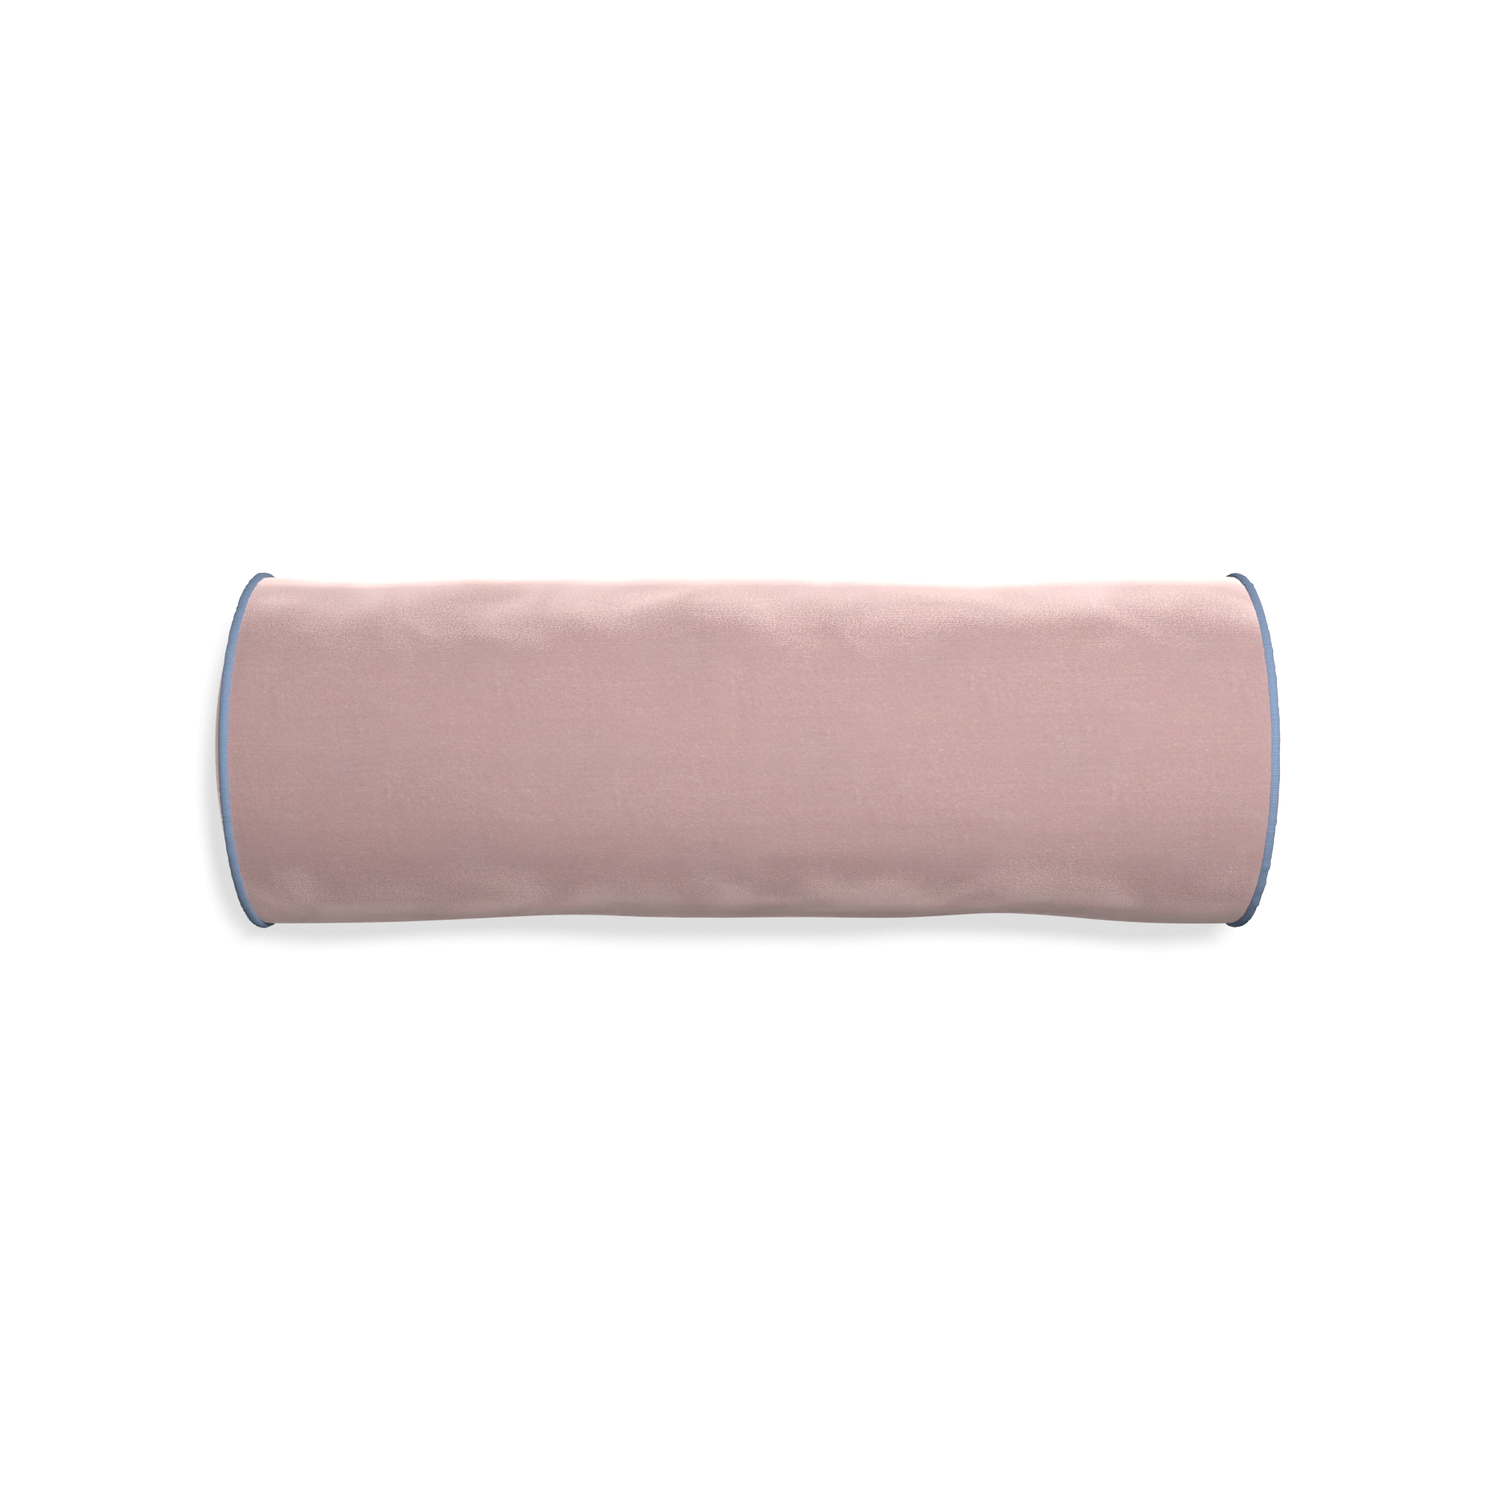 Bolster mauve velvet custom pillow with sky piping on white background